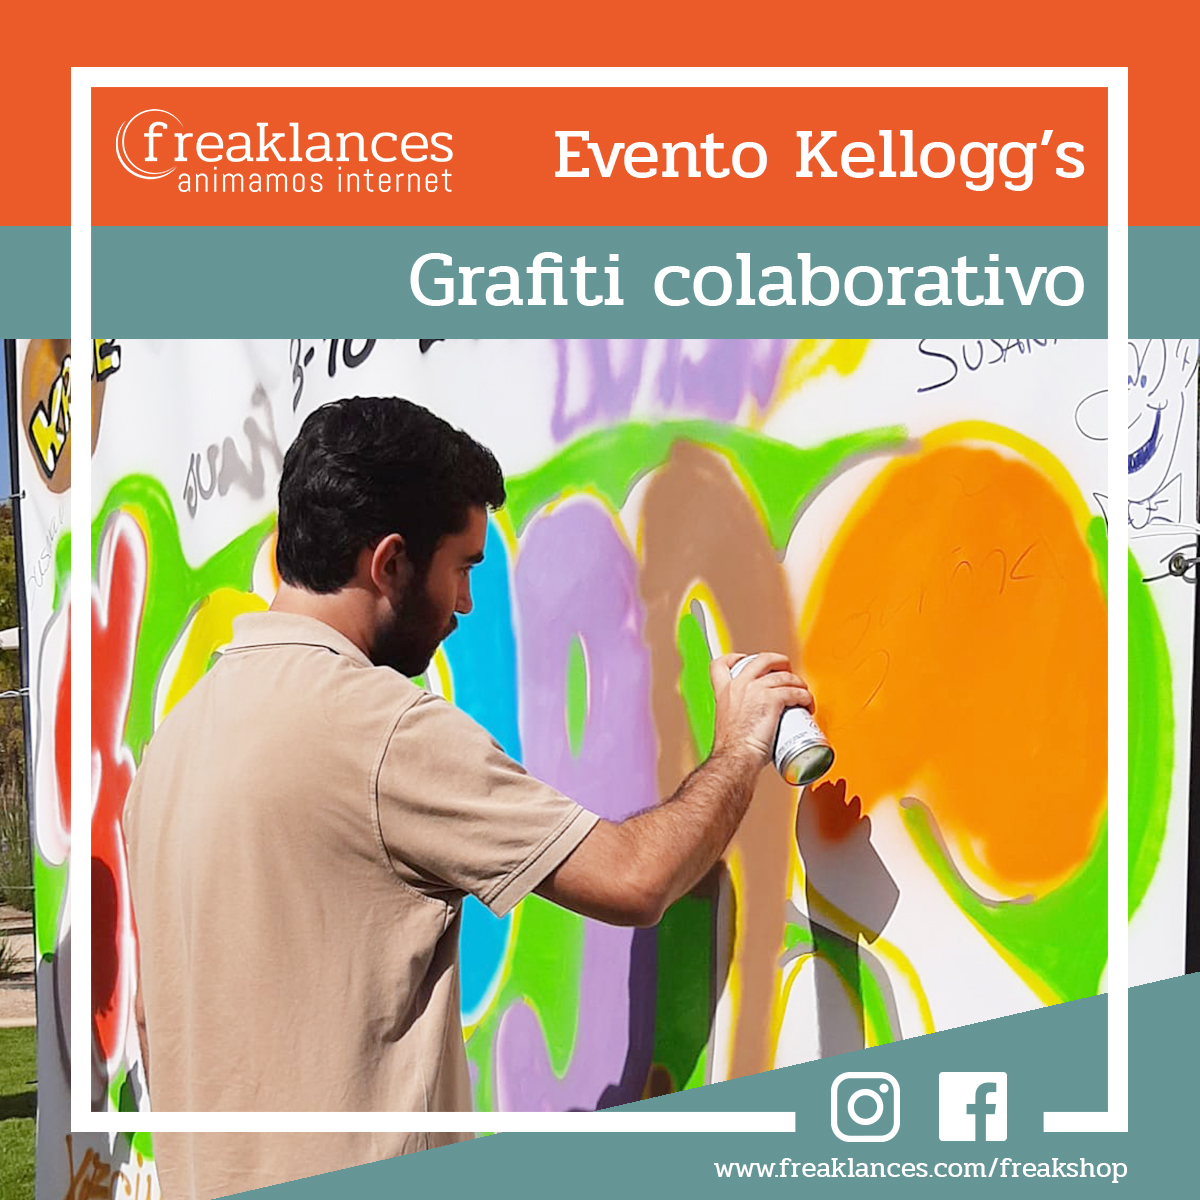 Evento de Kellogg's con Smarty Events donde se realizó un grafiti colaborativo.